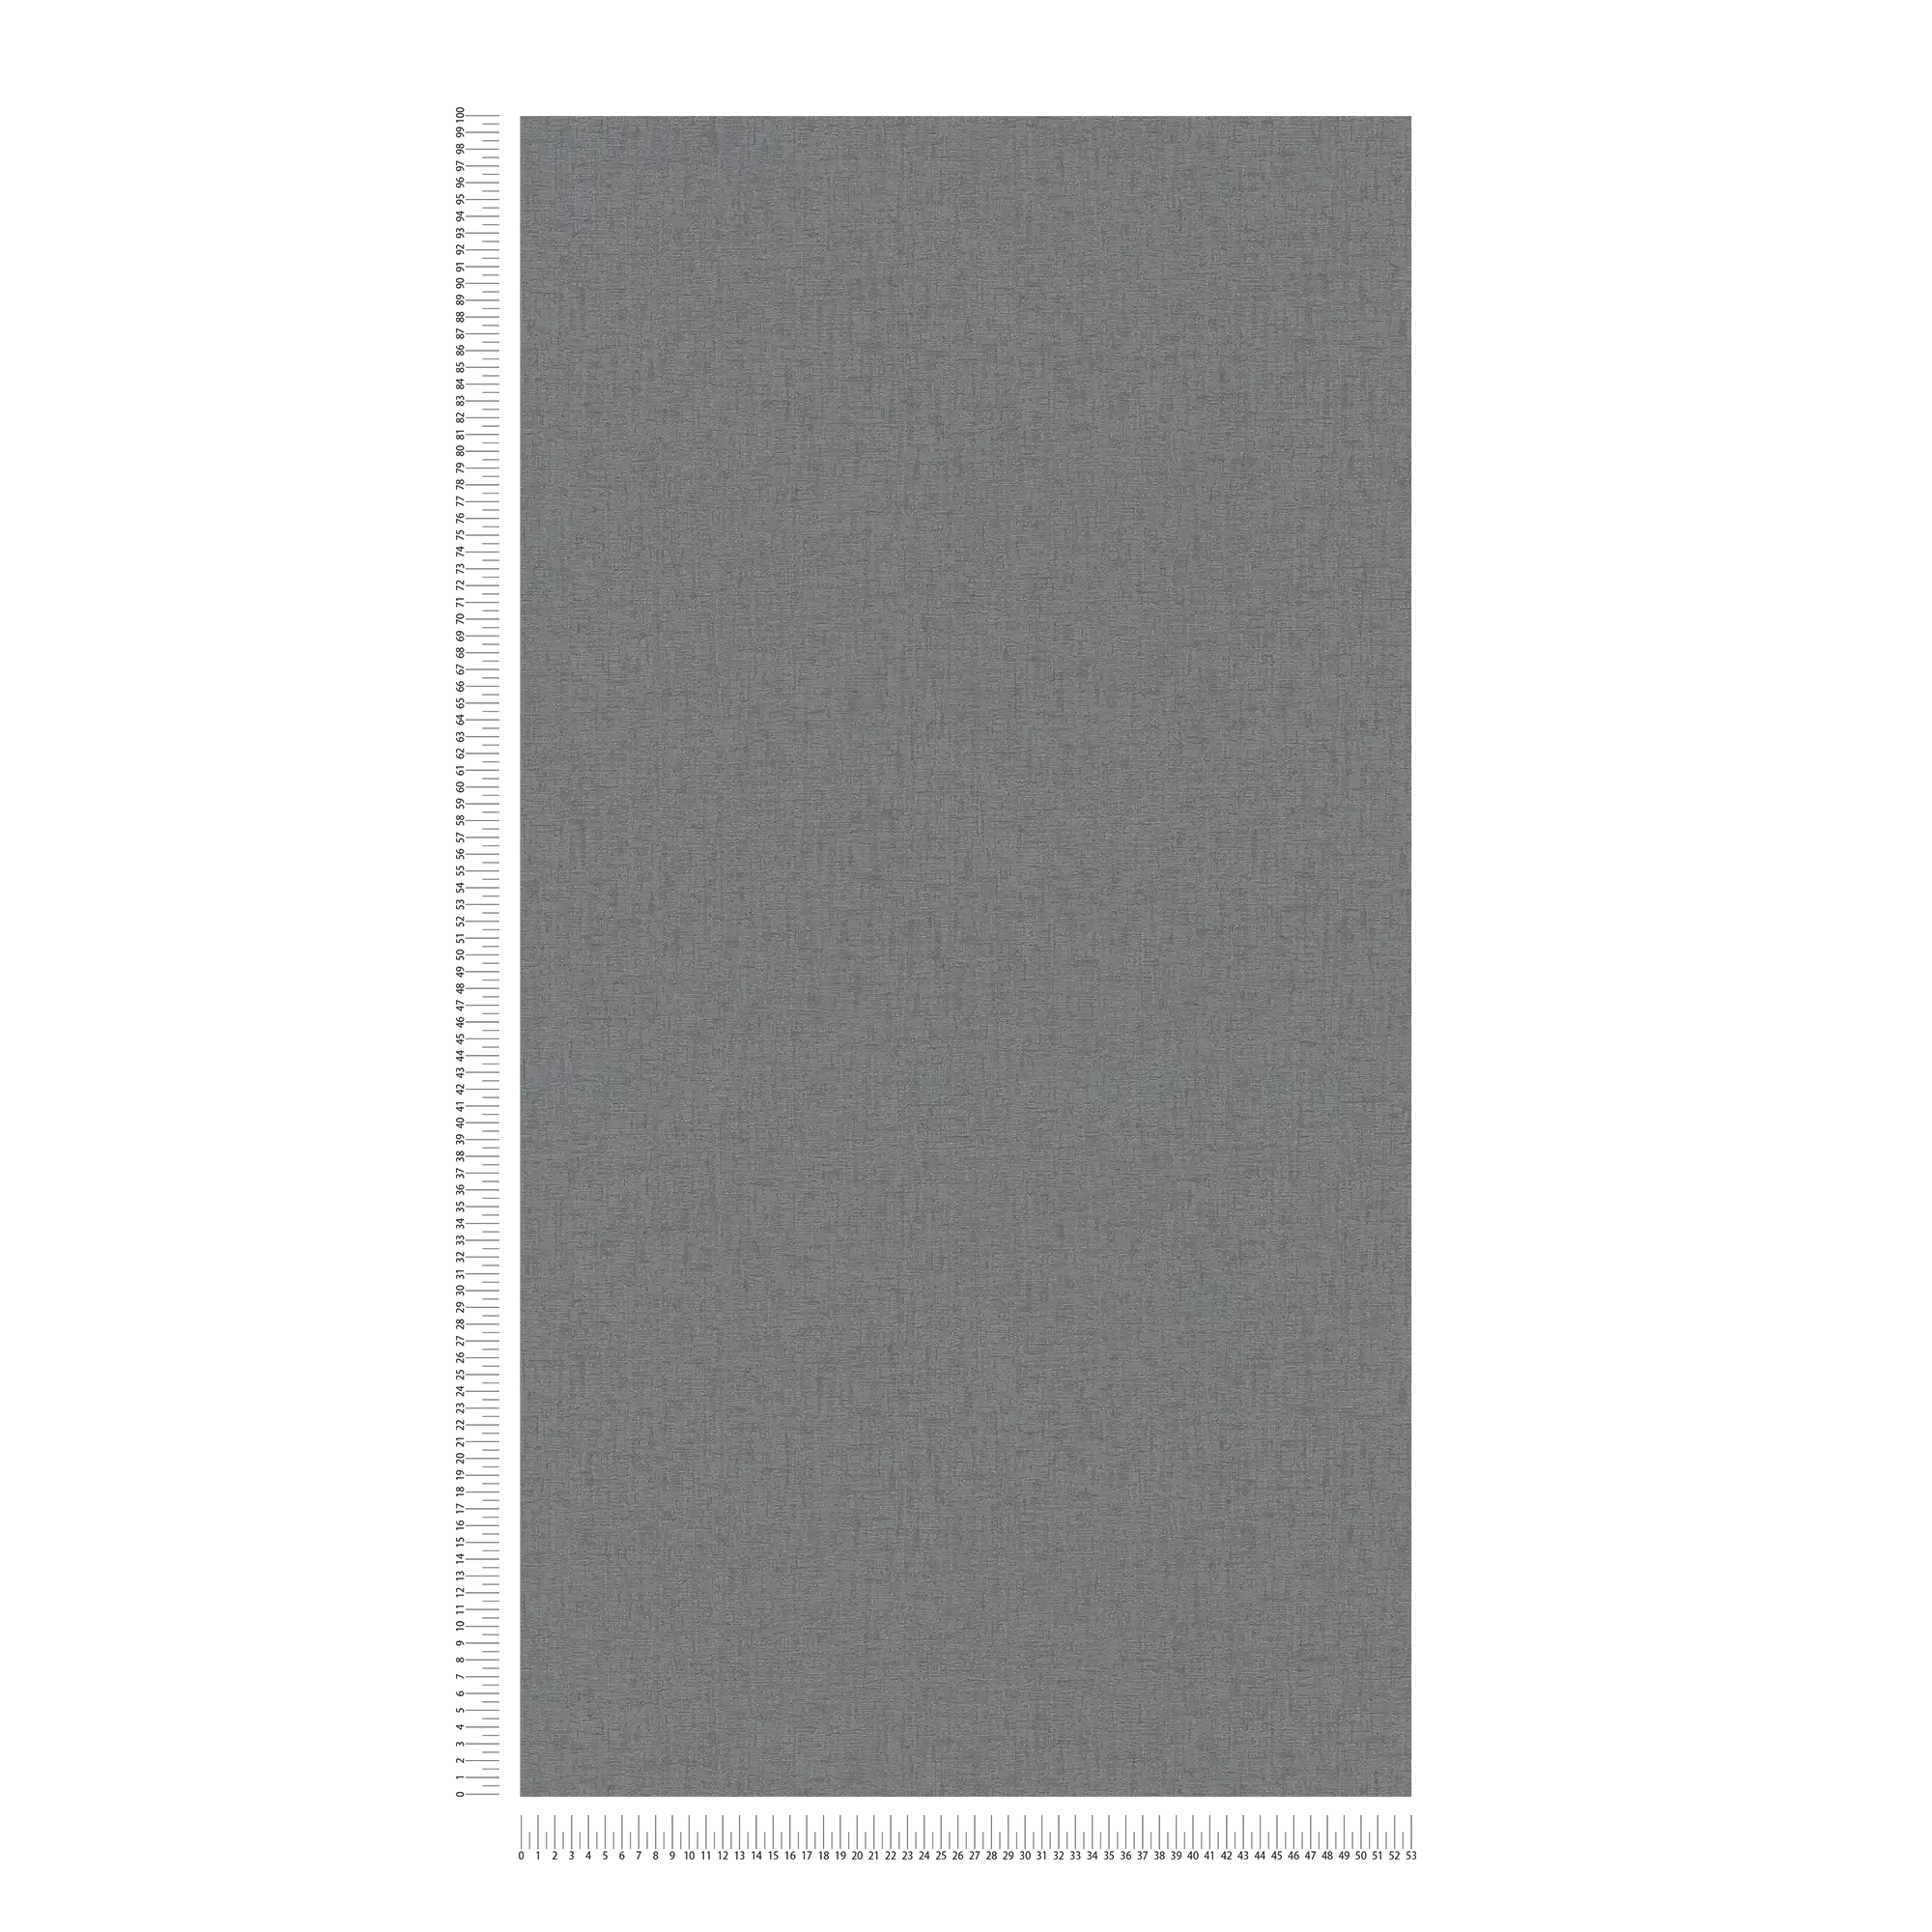             Papel pintado no tejido monocolor con textura textil - antracita, gris
        